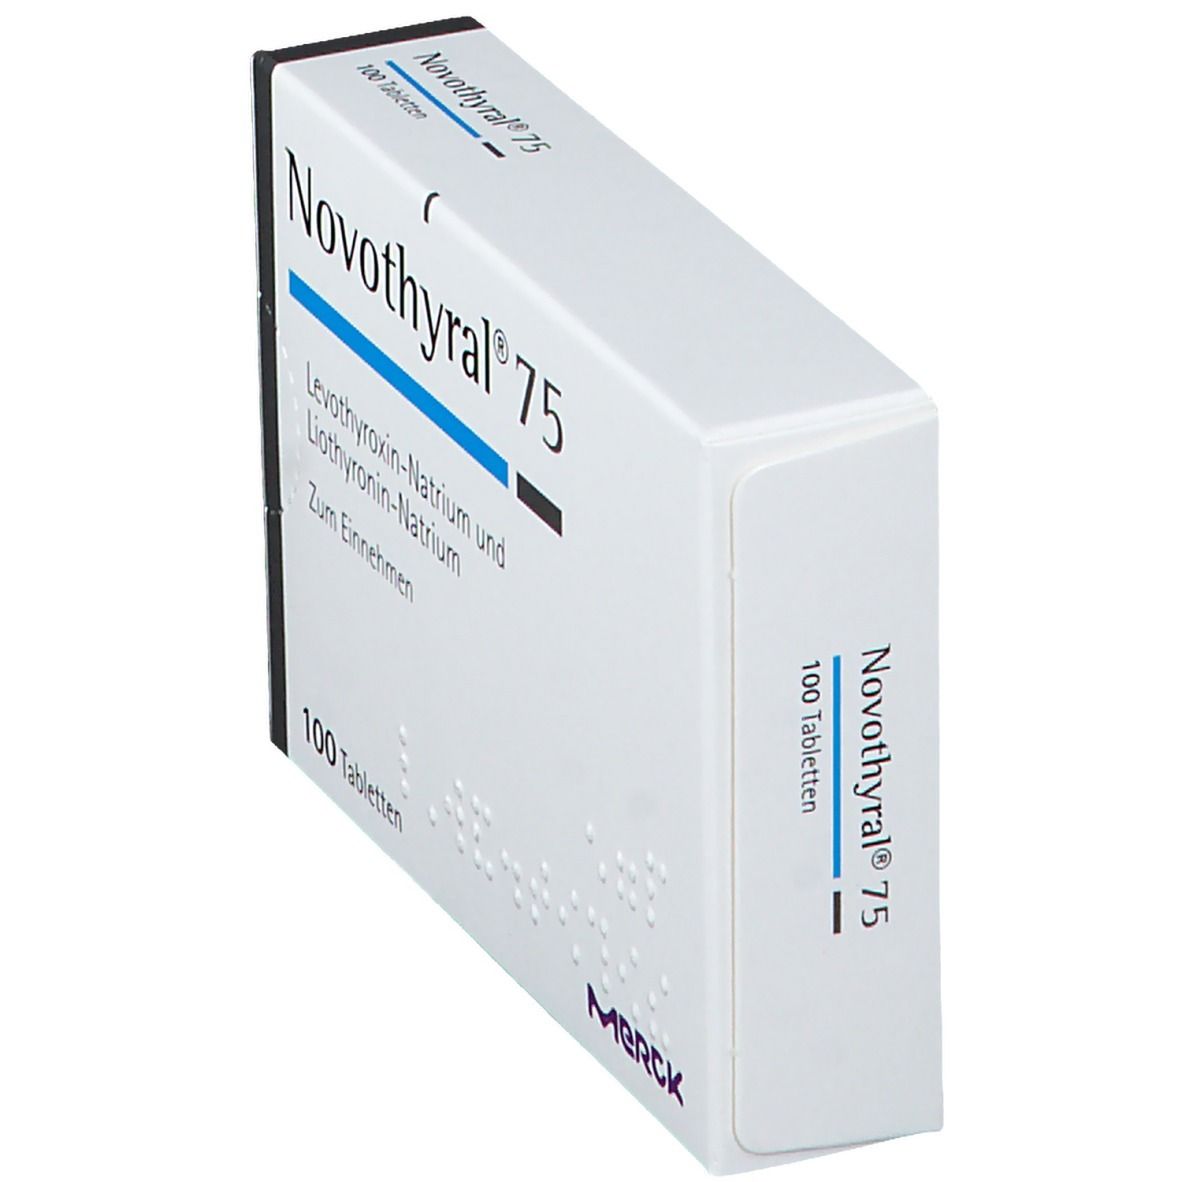 Novothyral® 75